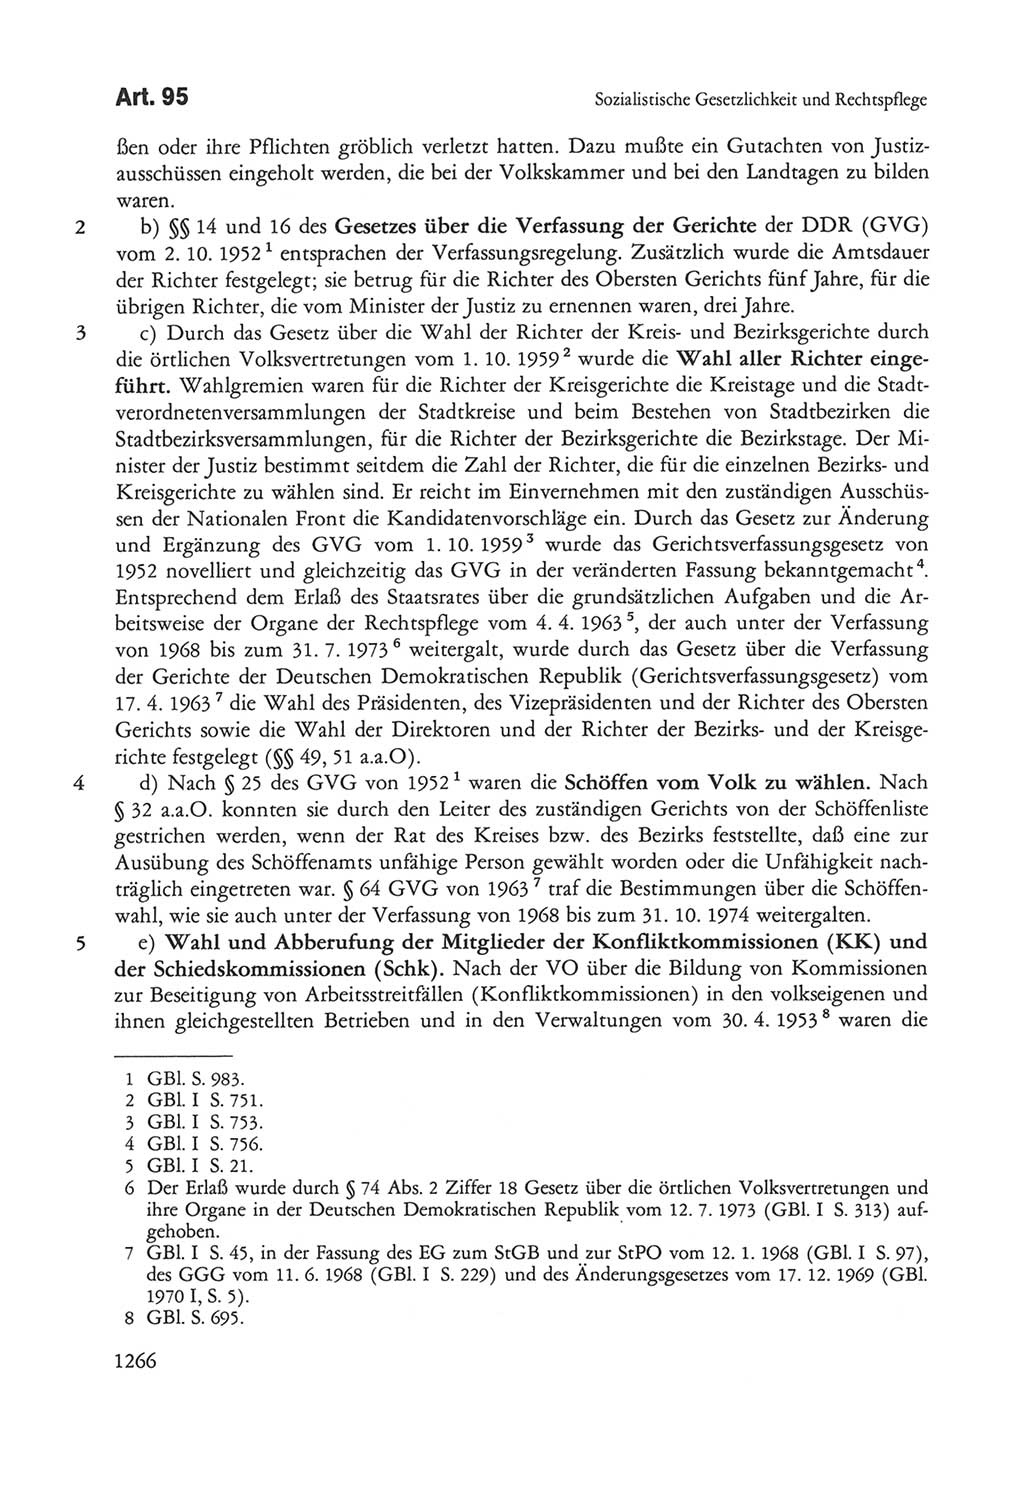 Die sozialistische Verfassung der Deutschen Demokratischen Republik (DDR), Kommentar 1982, Seite 1266 (Soz. Verf. DDR Komm. 1982, S. 1266)